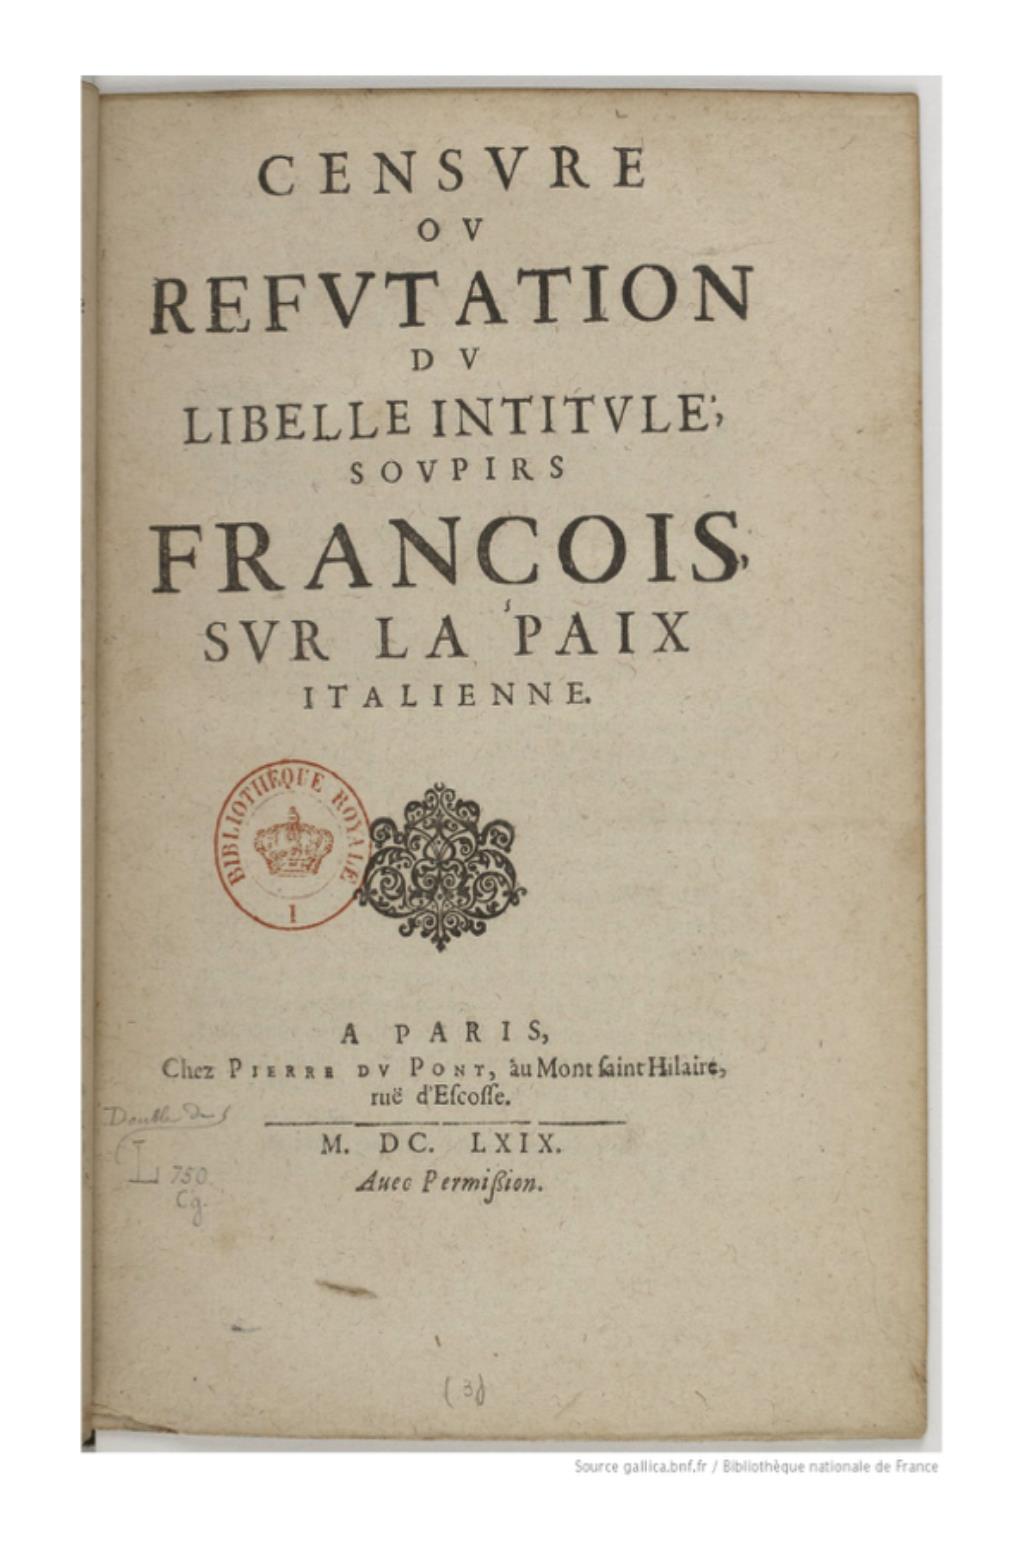 Censure ou refutation du libelle intitule, Soupirs françois, sur la paix italienne, Paris, Pierre Du Pont, 1649 (attribution à François Davenne controversée). Source gallica. 